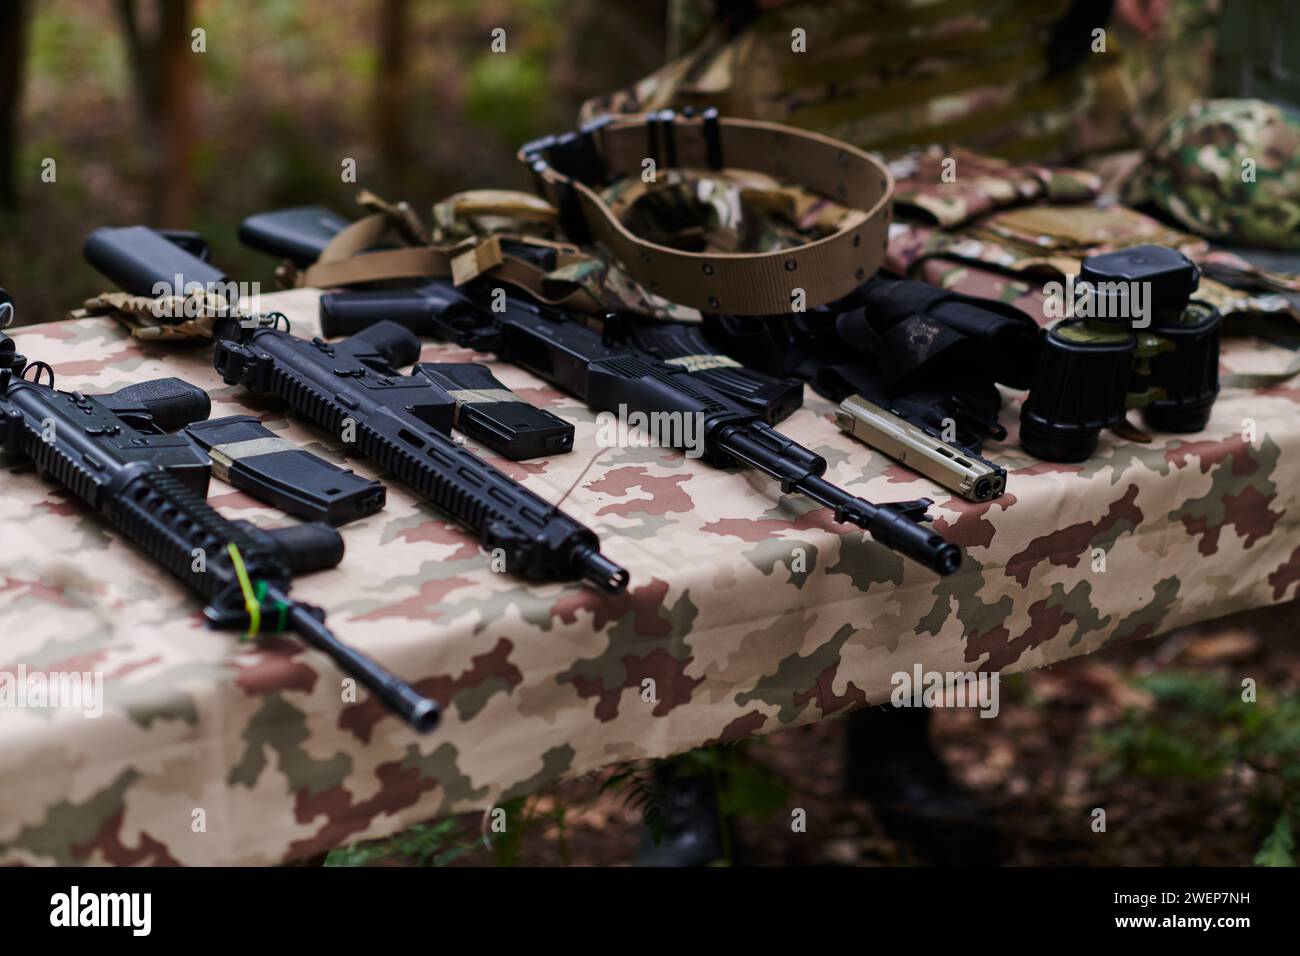 Un ensemble d'armes militaires, y compris des fusils et des pistolets, est méticuleusement disposé sur une table dans une base militaire, présentant une vue rapprochée du Banque D'Images